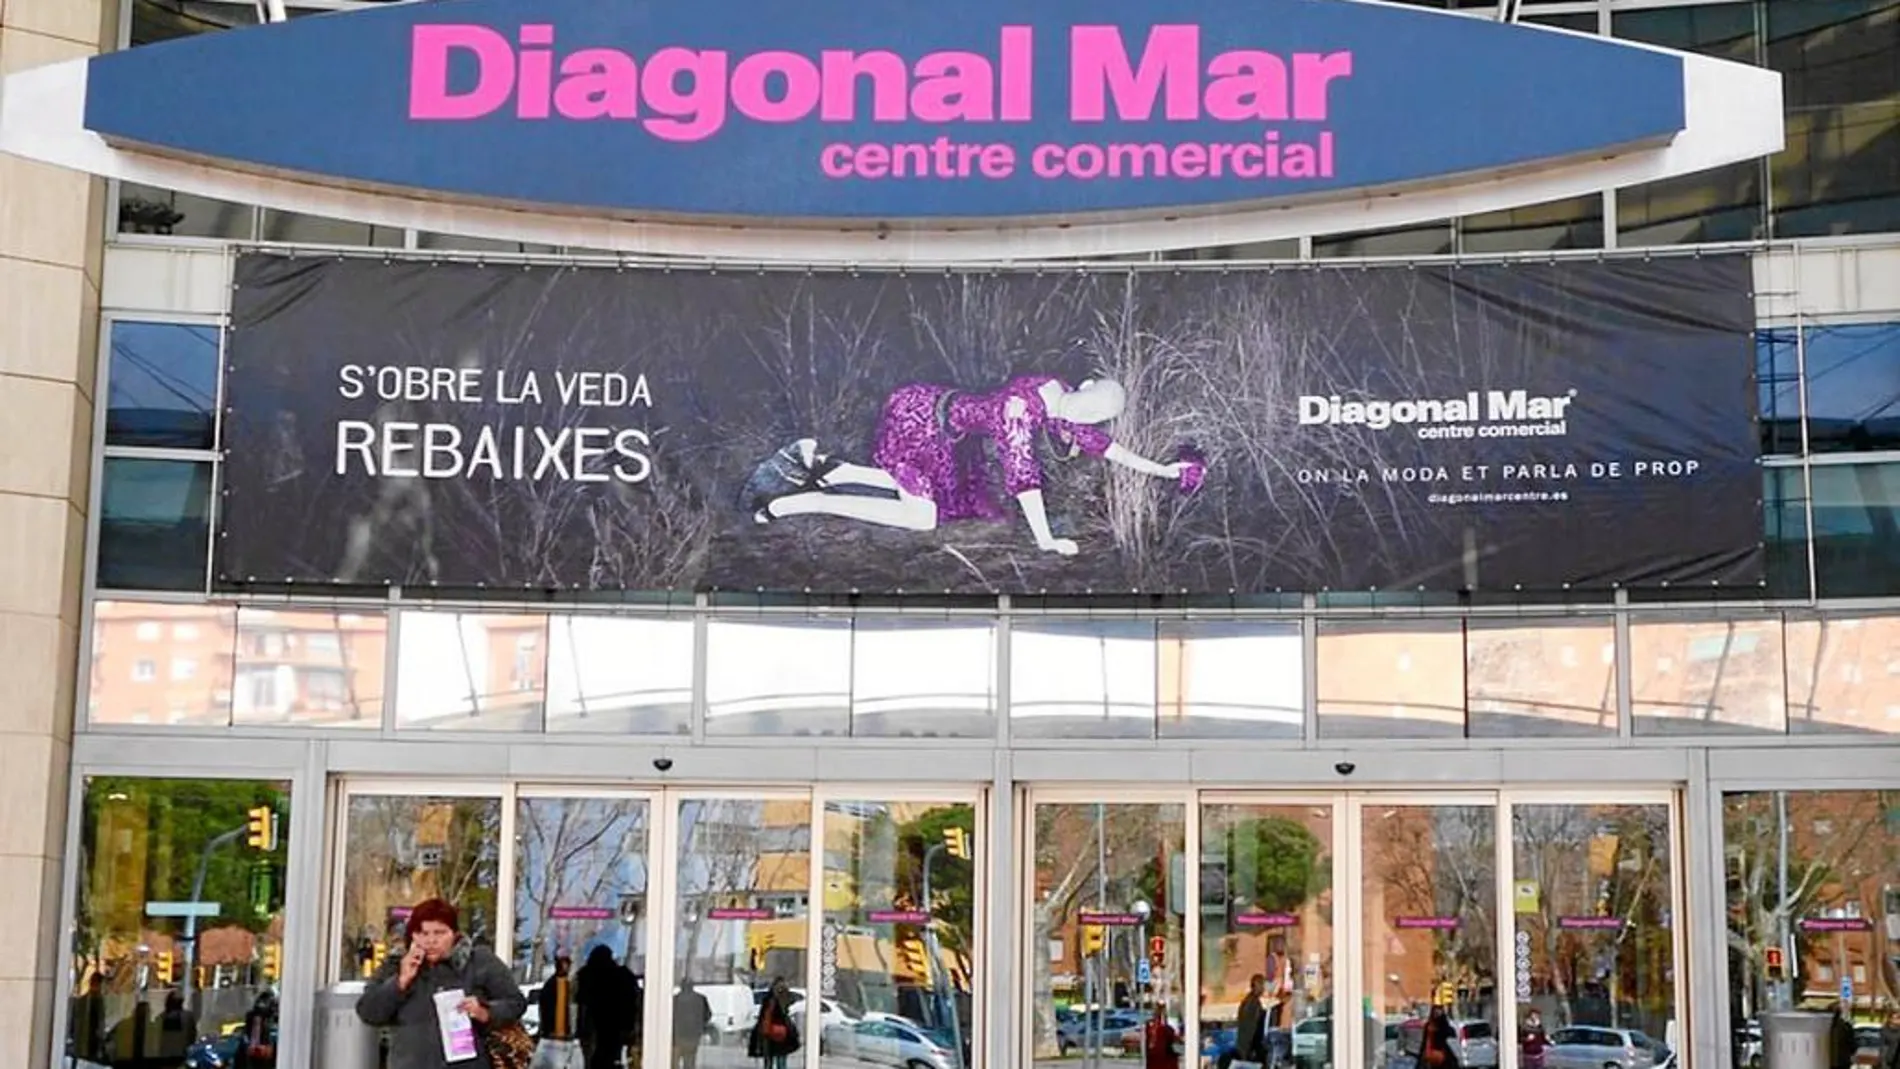 Entrada principal del centro comercial Diagonal Mar